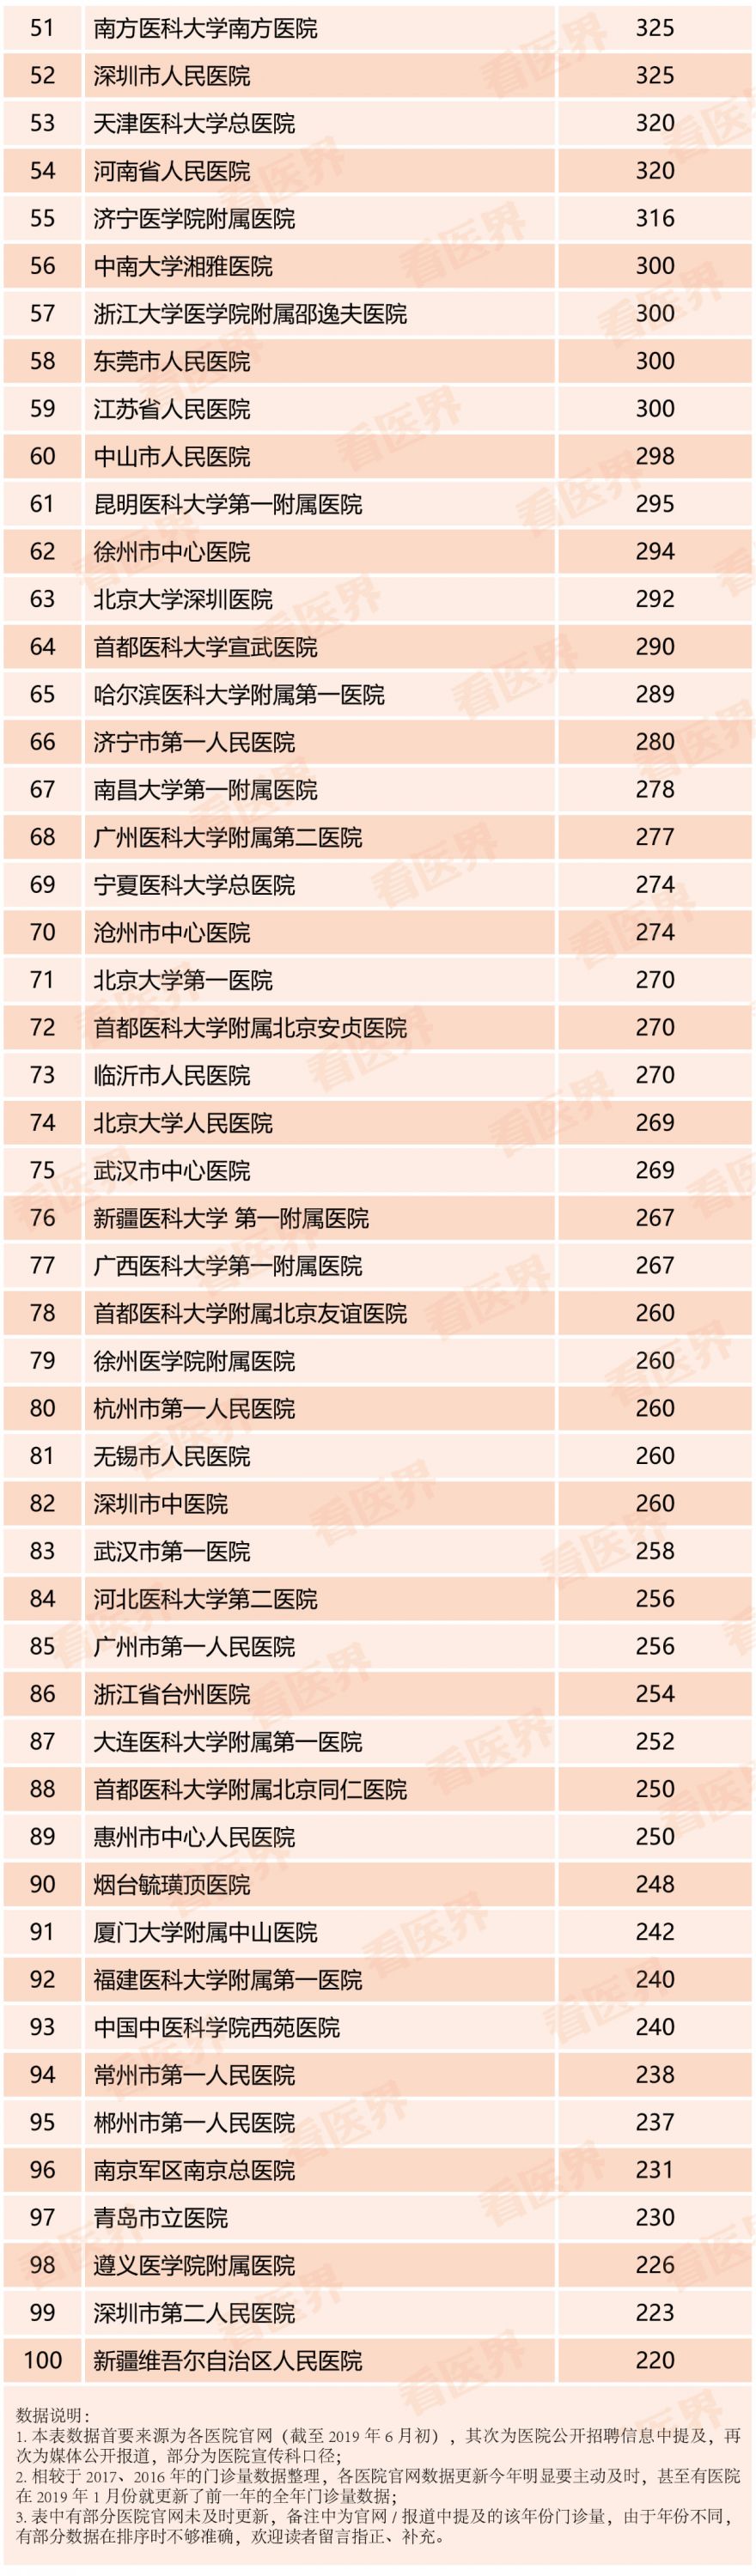 2018中国大学排行榜_2018中国大学排行榜100强